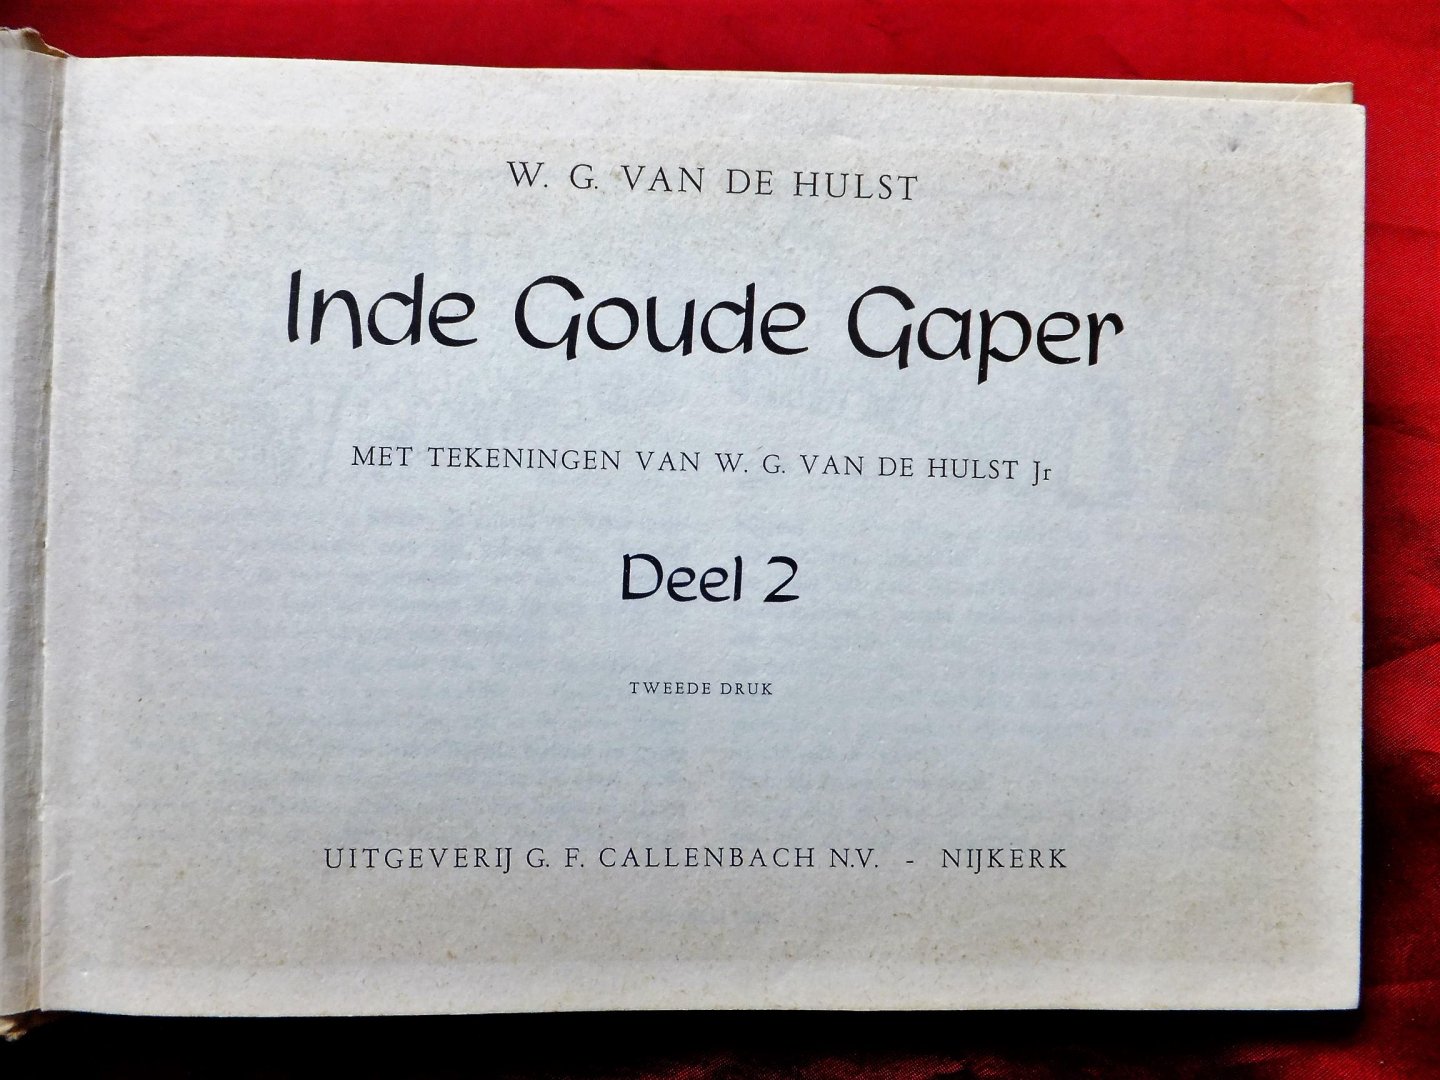 Hulst, W.G. van de - Inde Goude Gaper 2